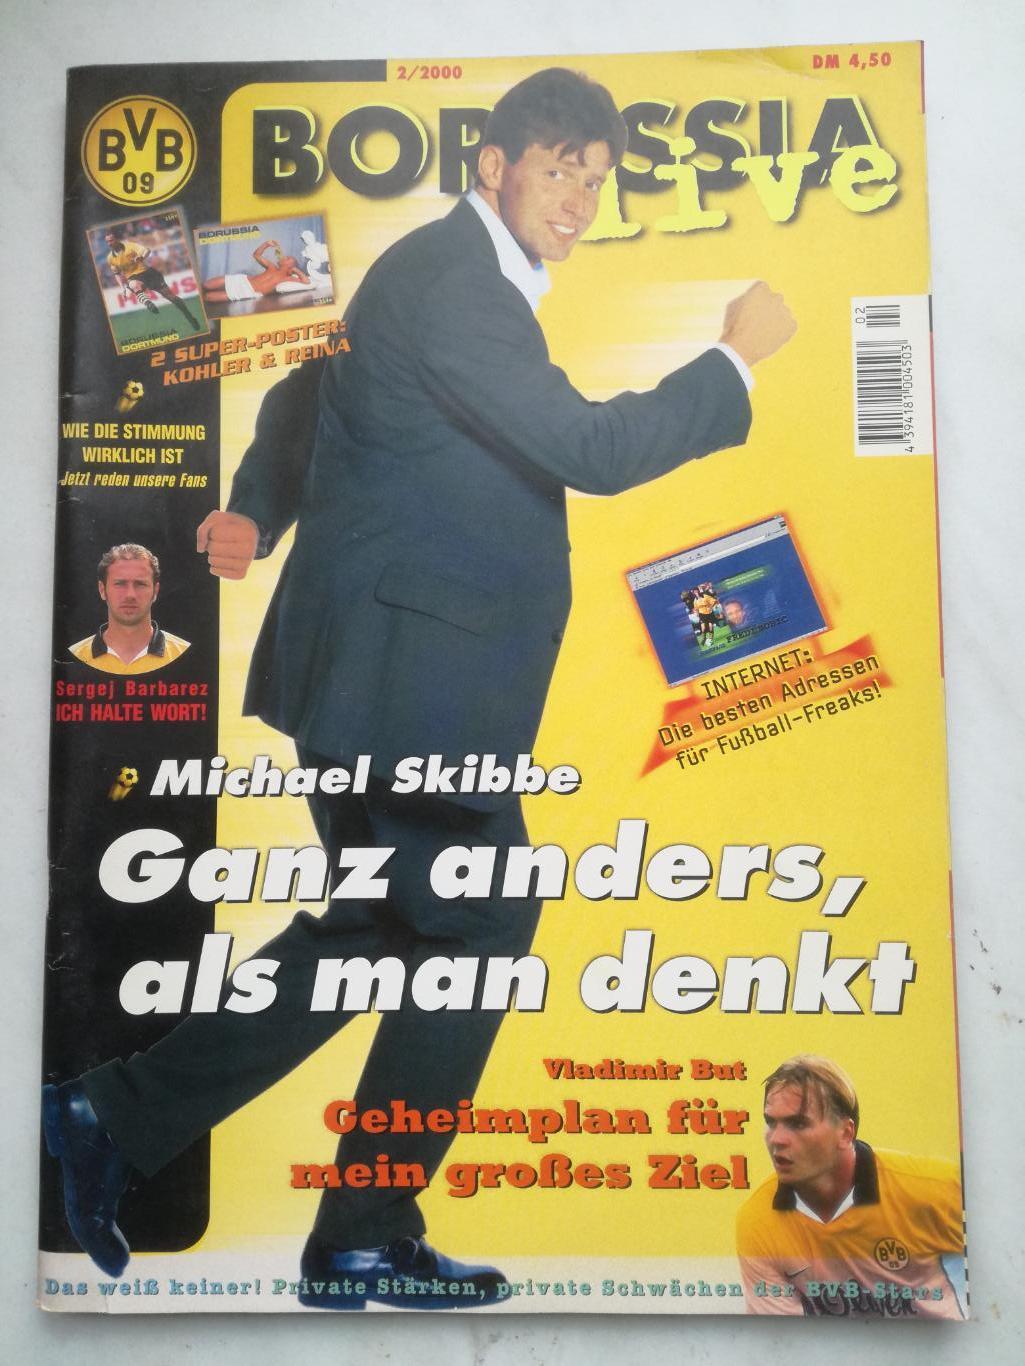 Официальный журнал Боруссия Дортмунд, февраль 2000. Постеры